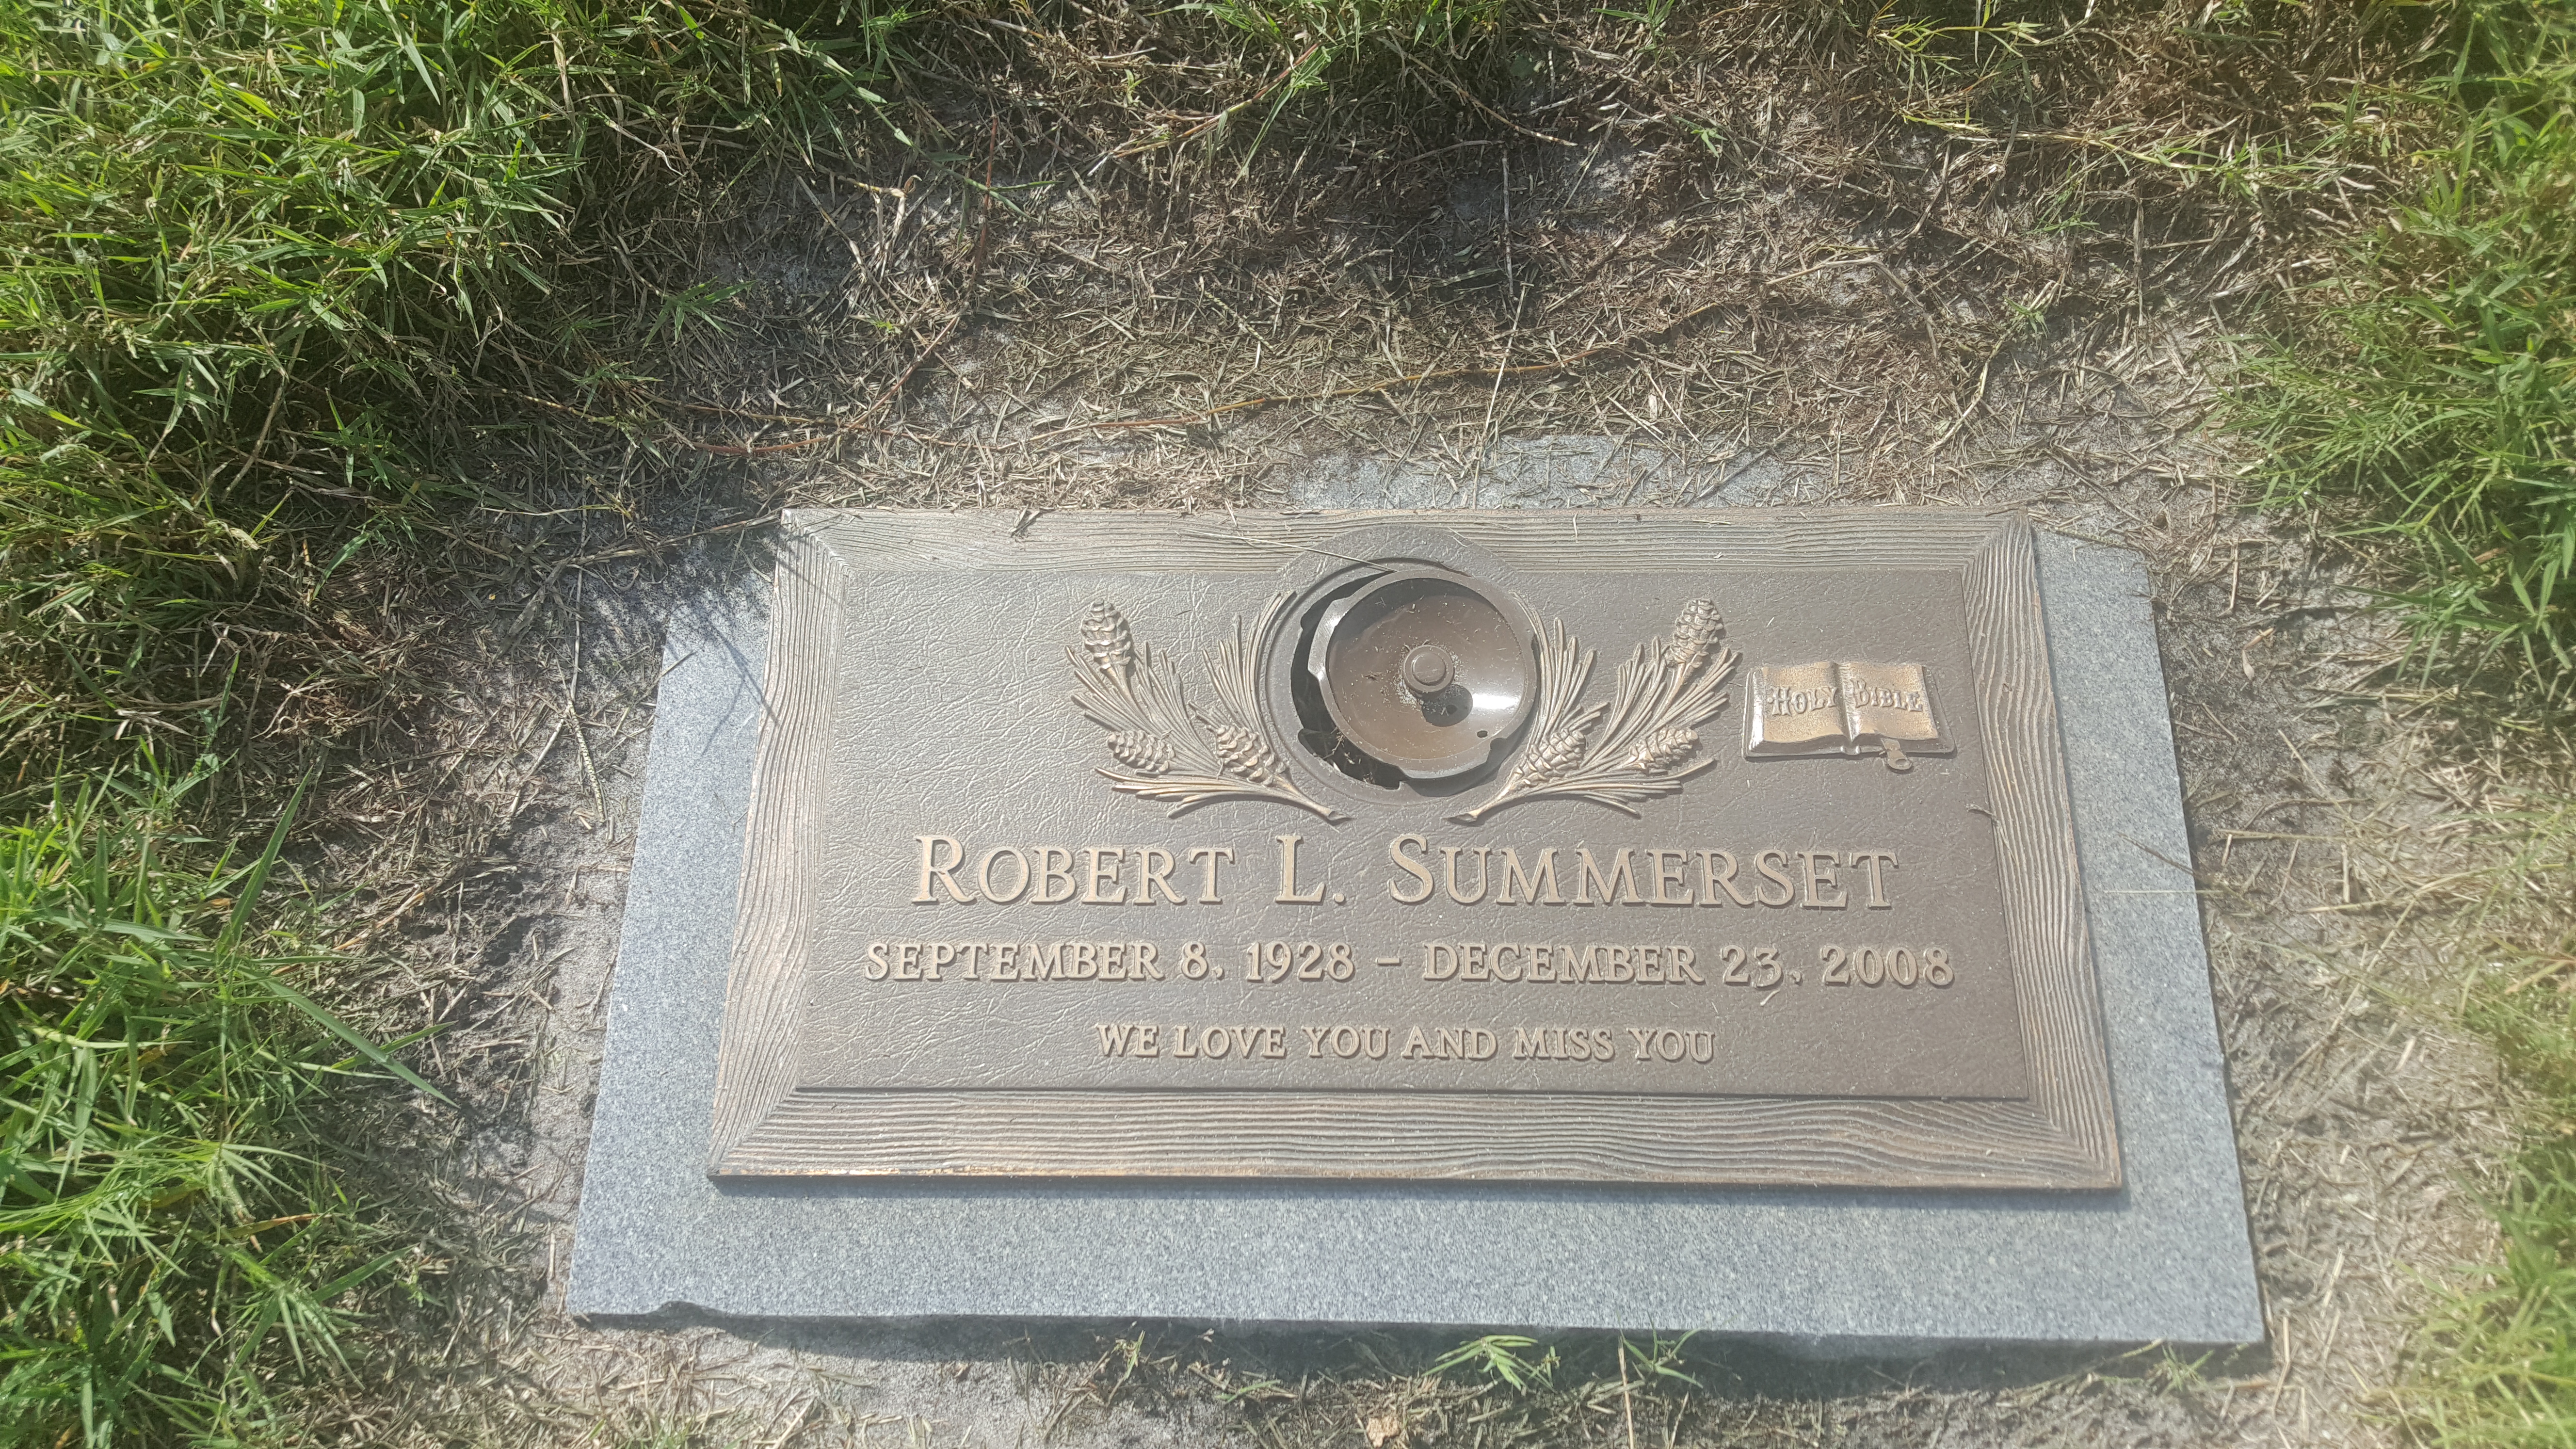 Robert L Summerset